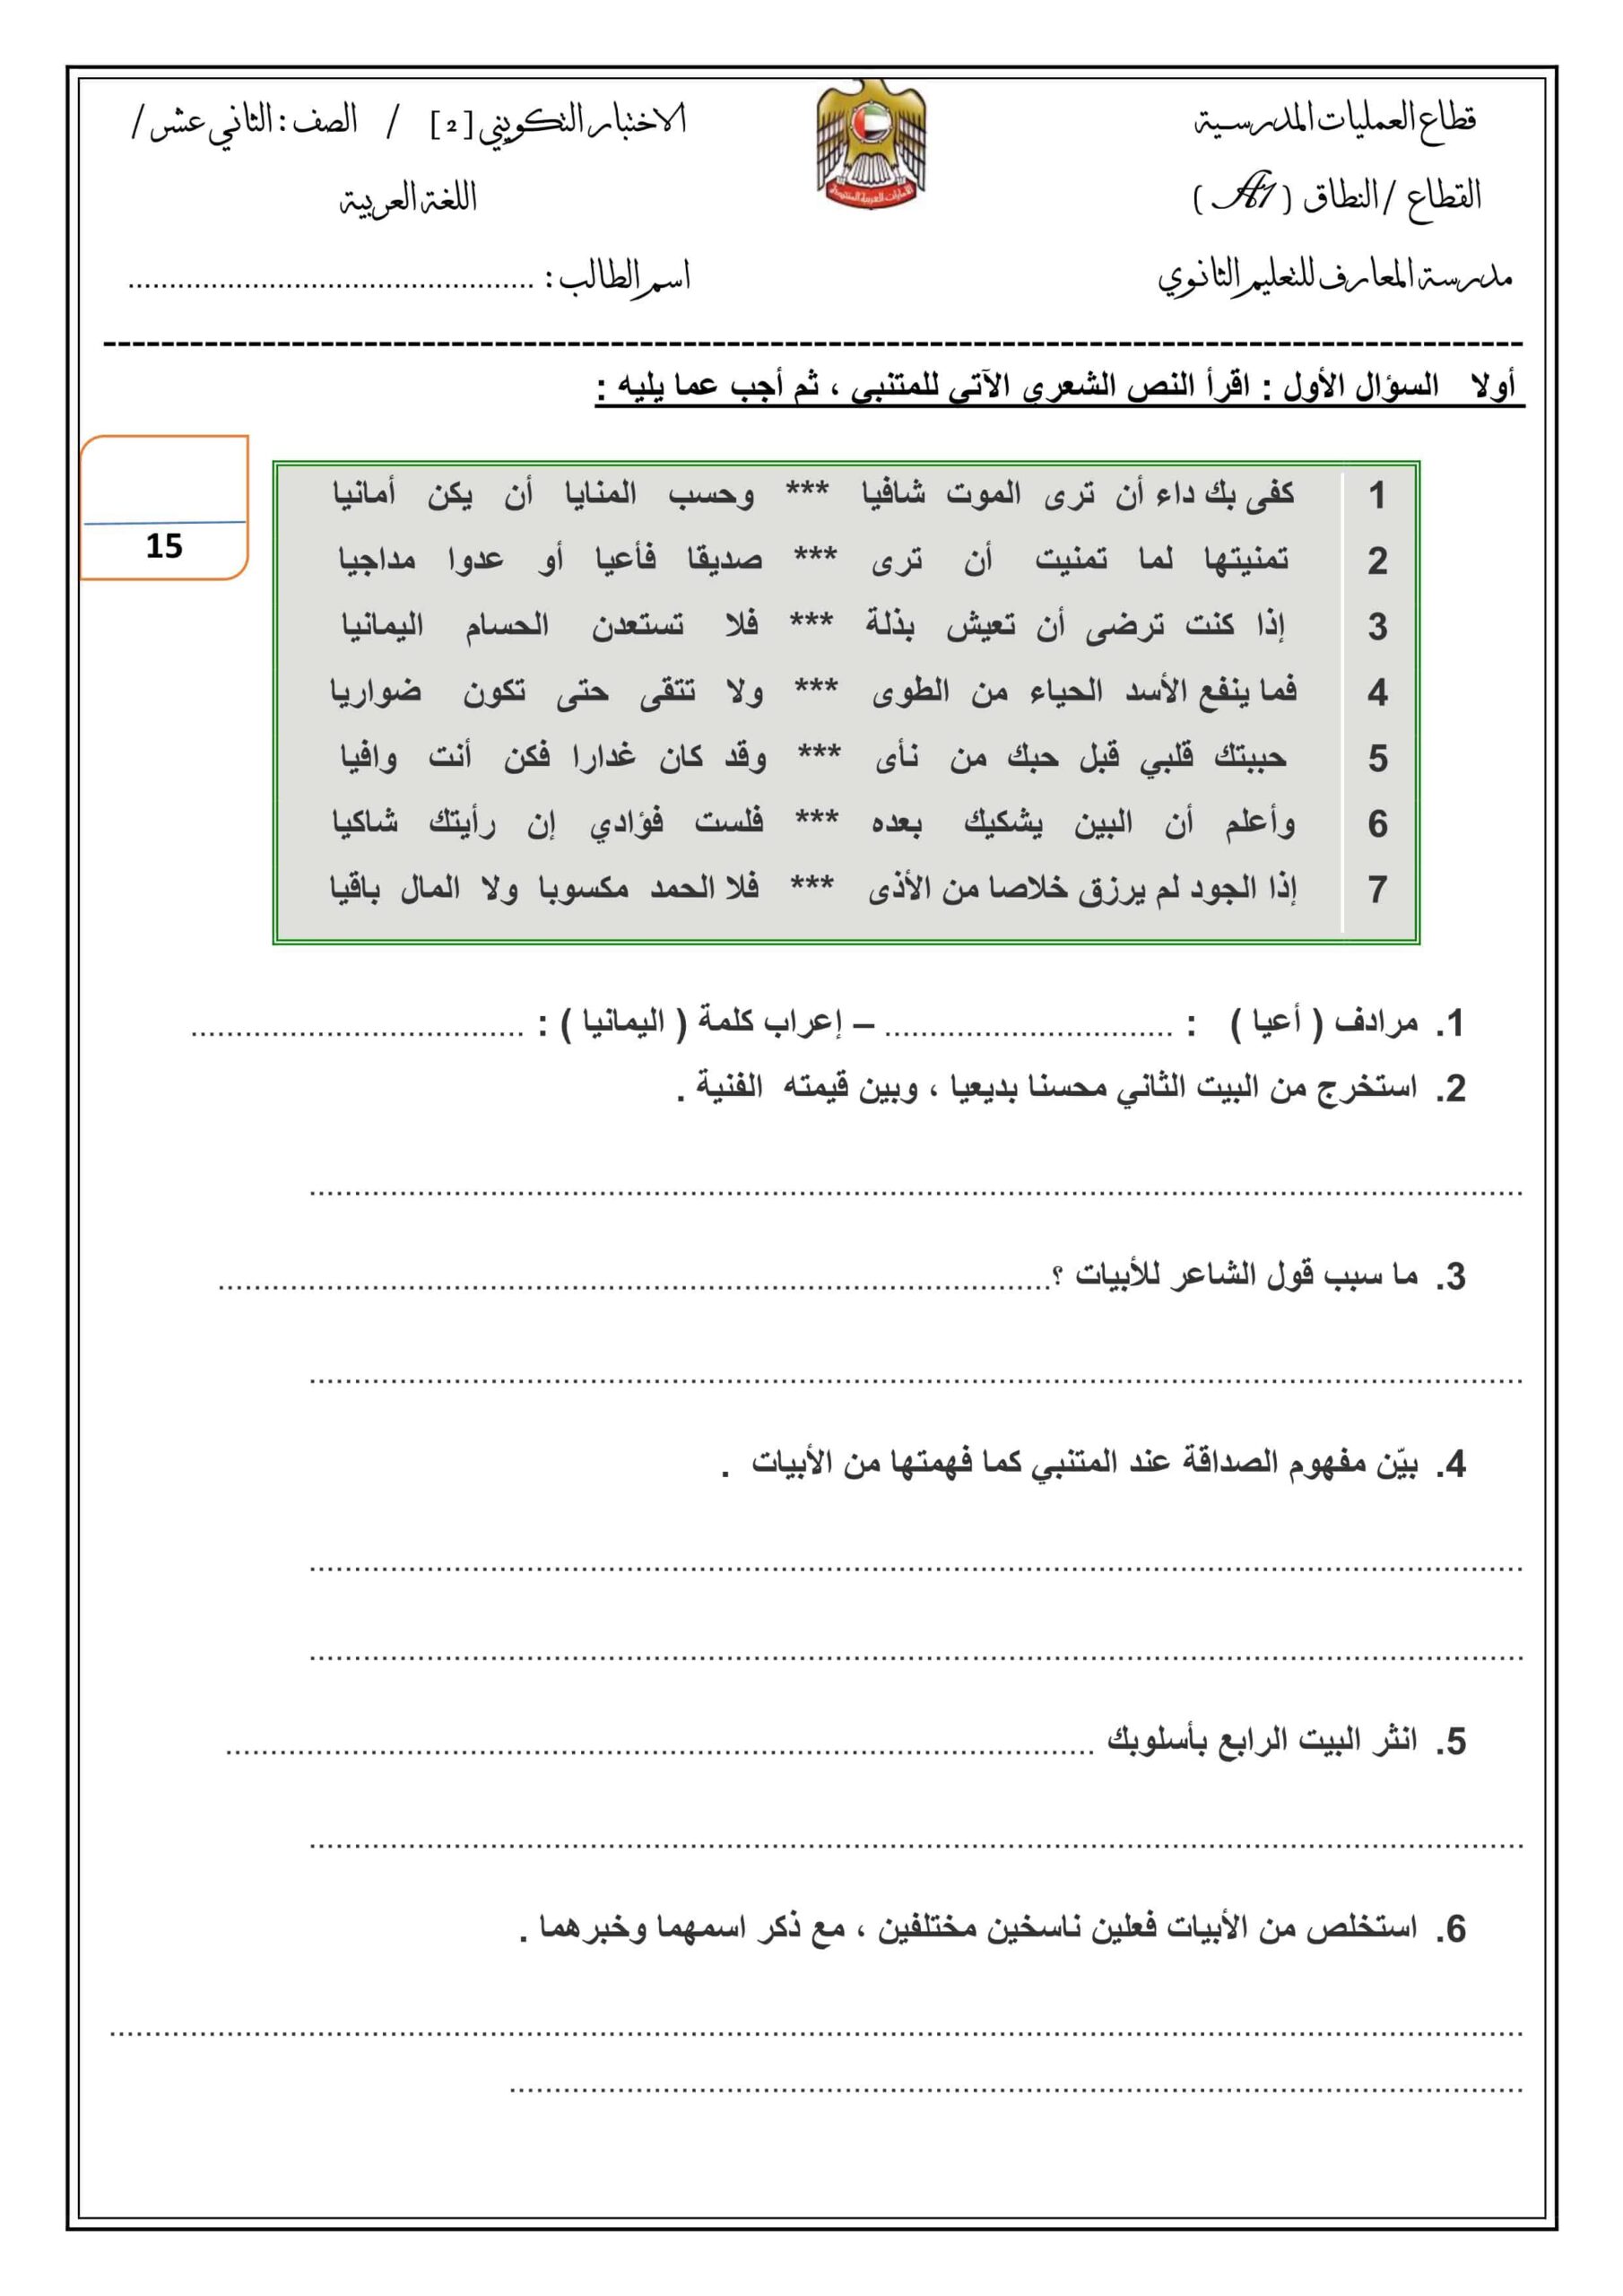 الاختبار التكويني الثاني اللغة العربية الصف الثاني عشر 